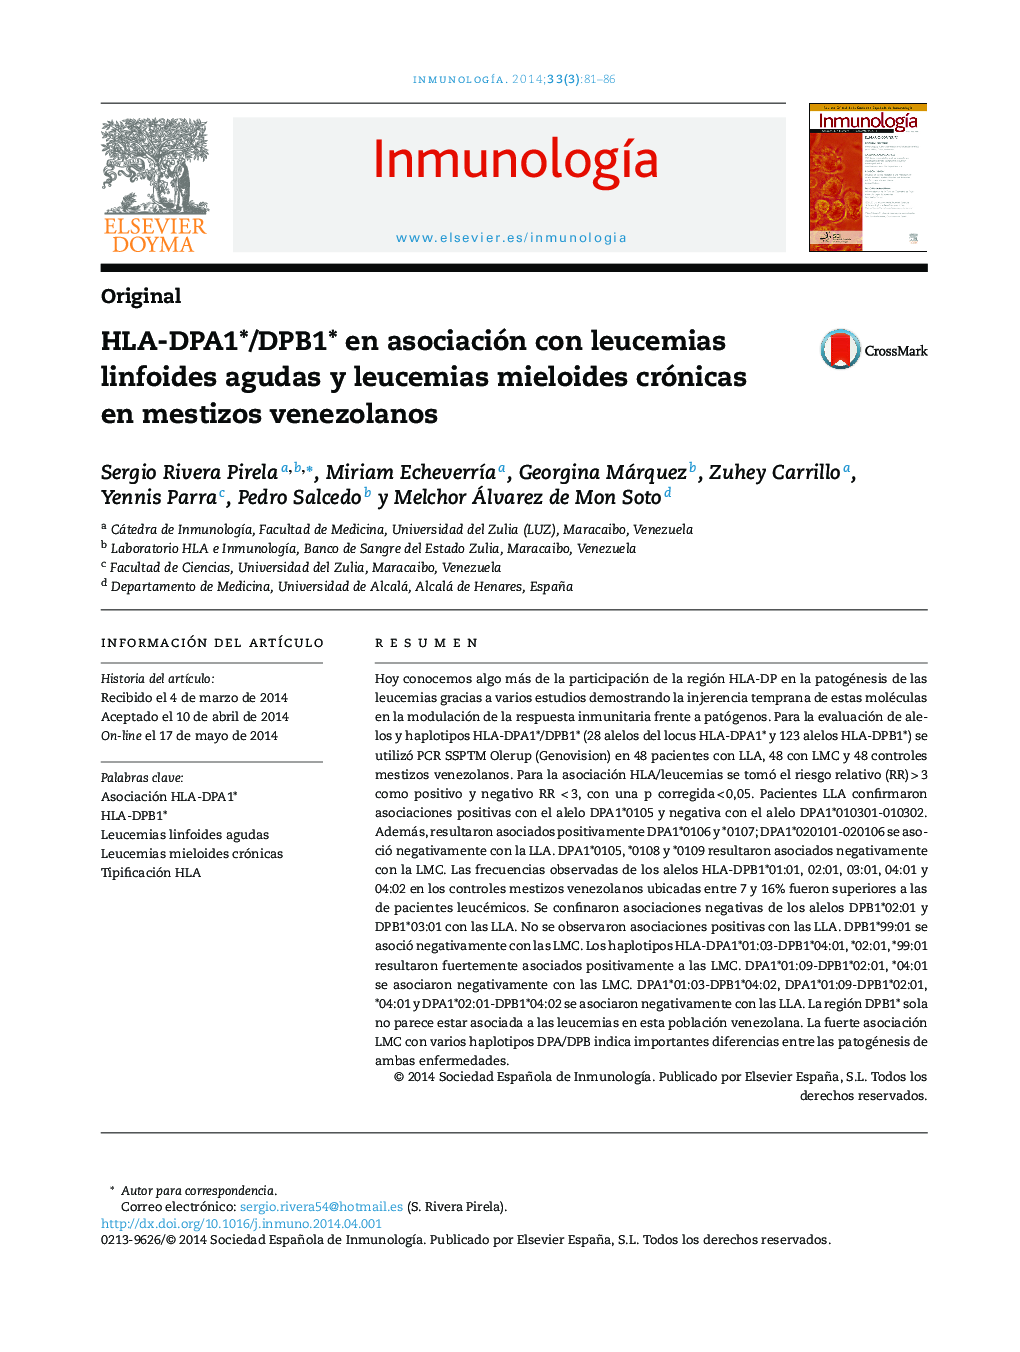 HLA-DPA1*/DPB1* en asociación con leucemias linfoides agudas y leucemias mieloides crónicas en mestizos venezolanos